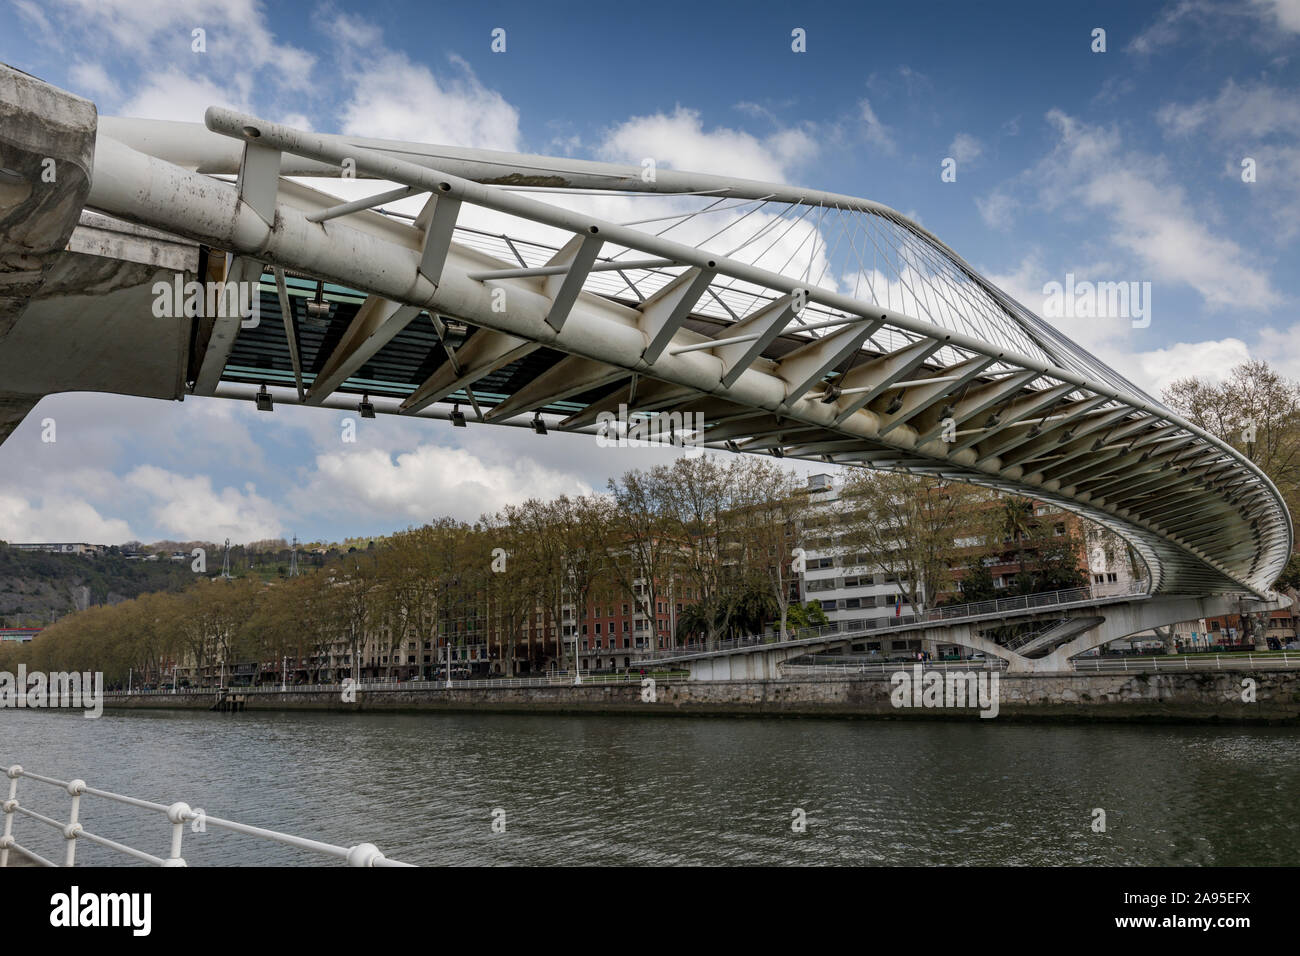 Le Zubizuri Puente, conçue par Santiago Calatrava, une passerelle au-dessus de la rivière Nervión futuriste avec un attaché-arch design & une allée courbe Banque D'Images